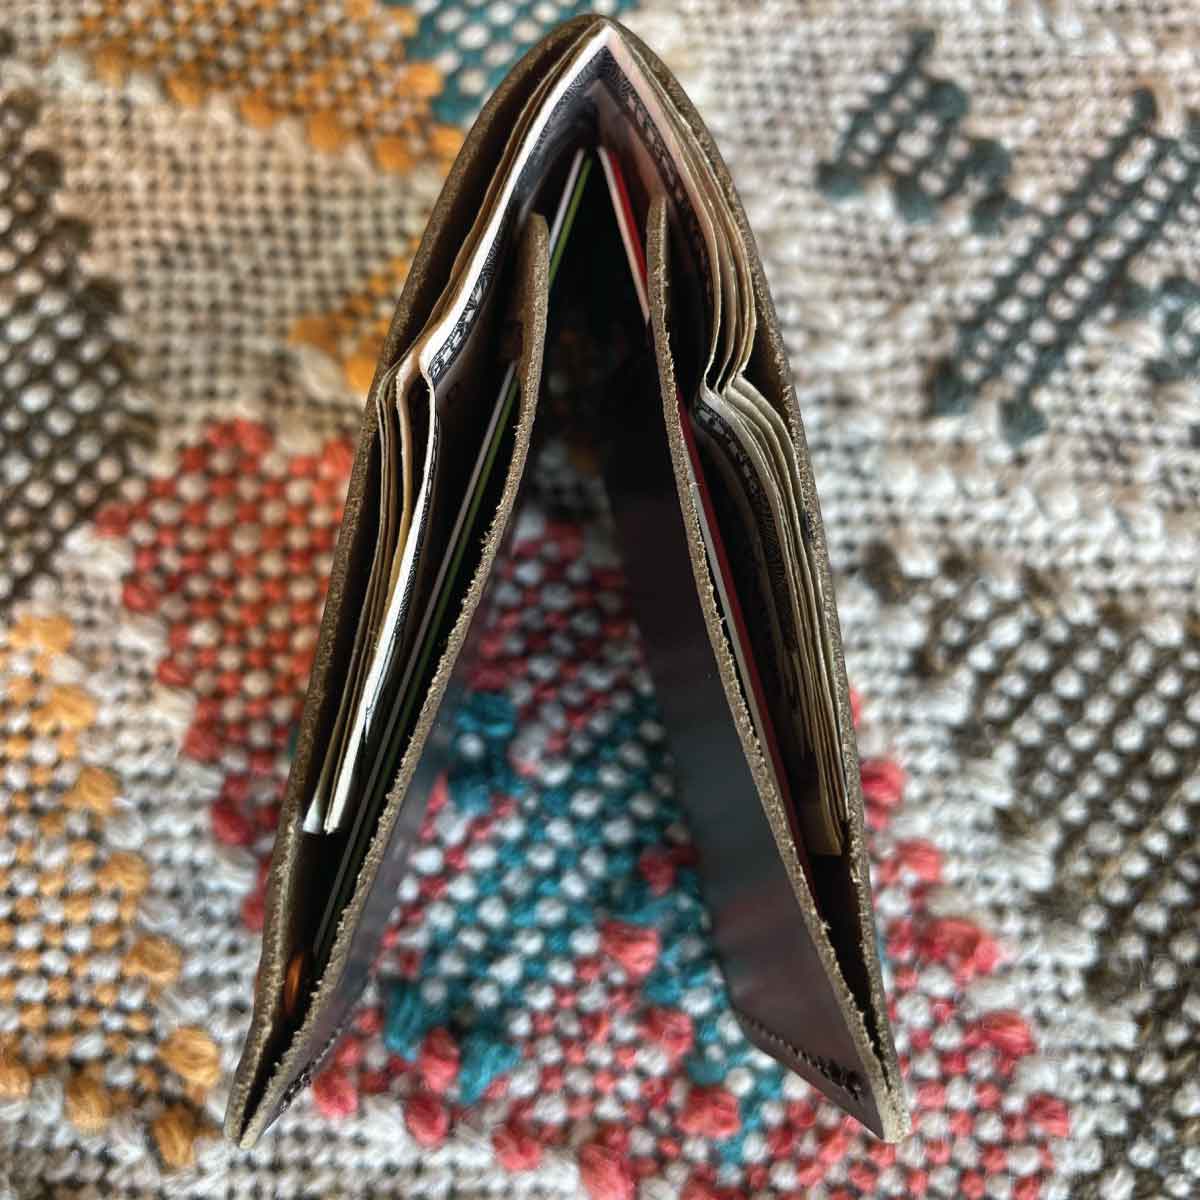 Louis-Vuitton-Monogram-Set-of-3-Long-Wallet-Card-Case-Pen-Case